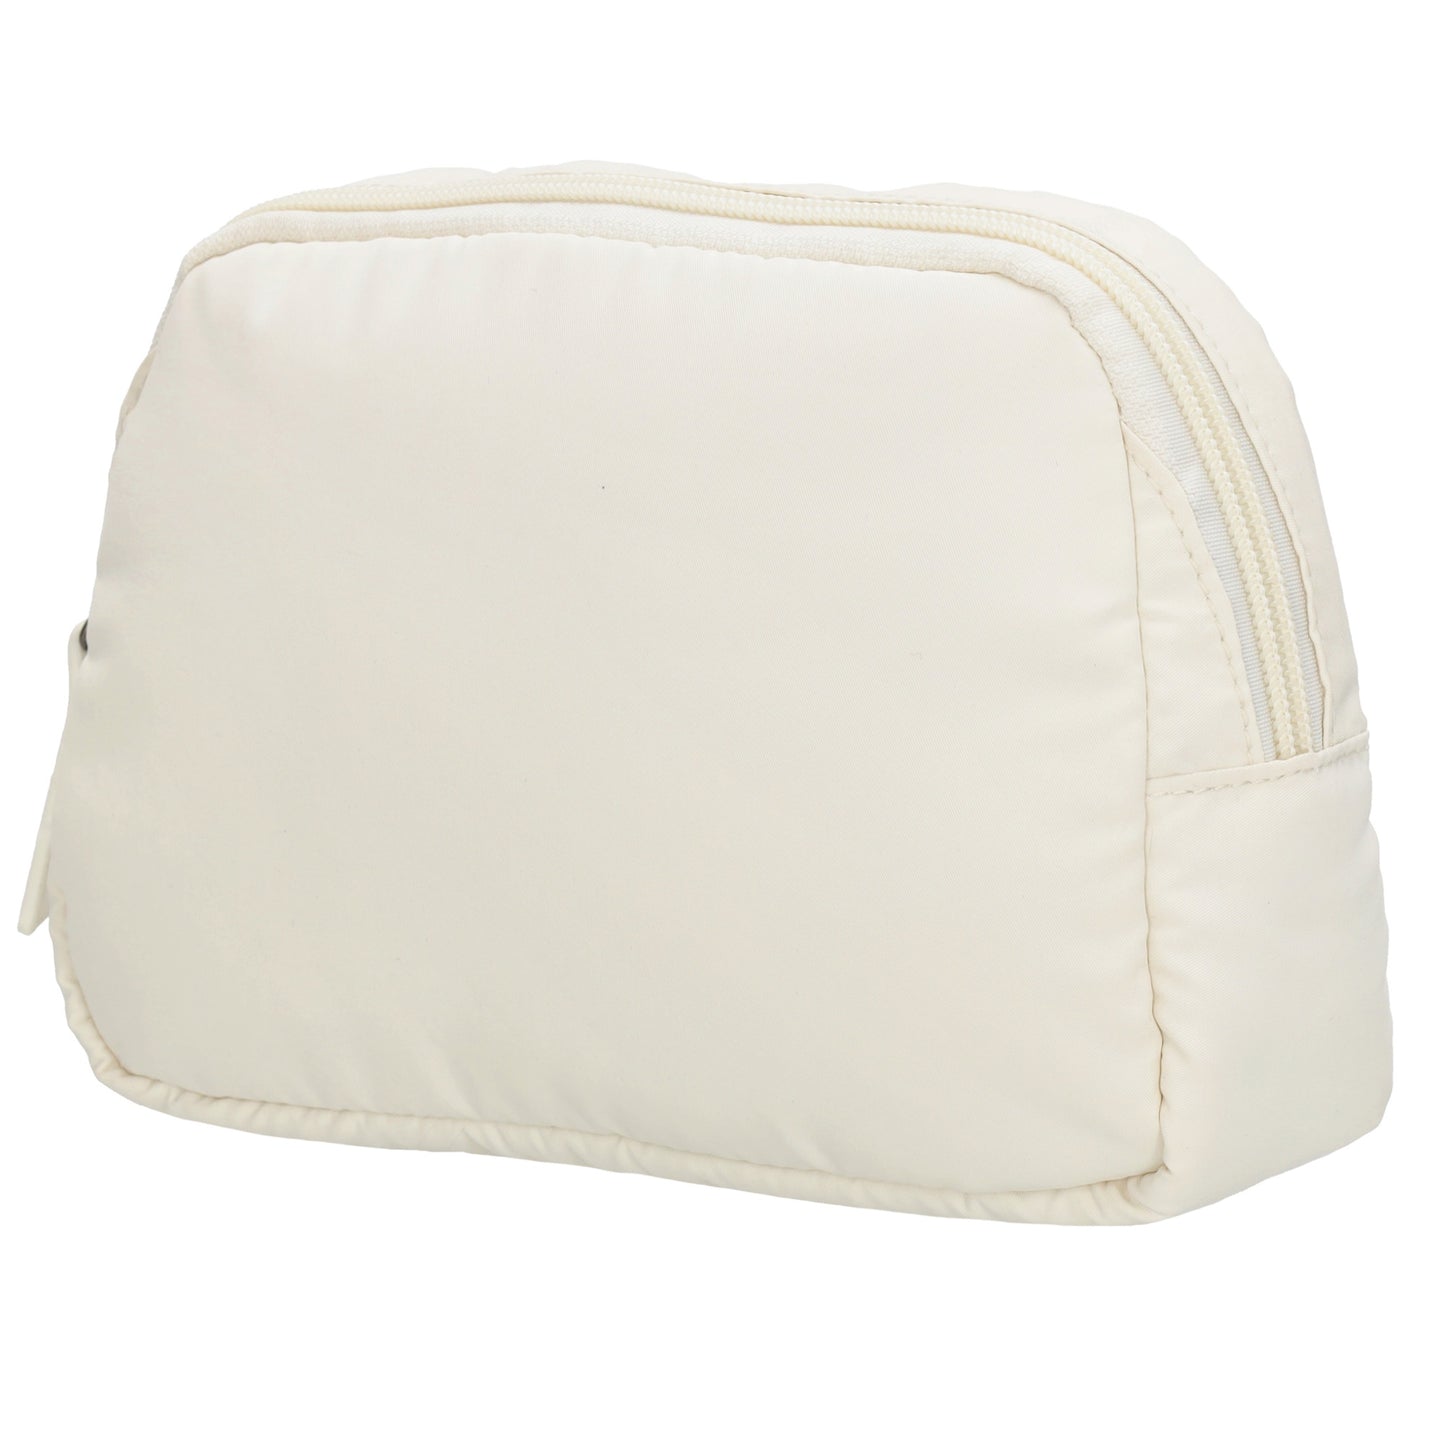 Bodybag|Gürteltasche 19,5 x 14cm in Weiß wattiert